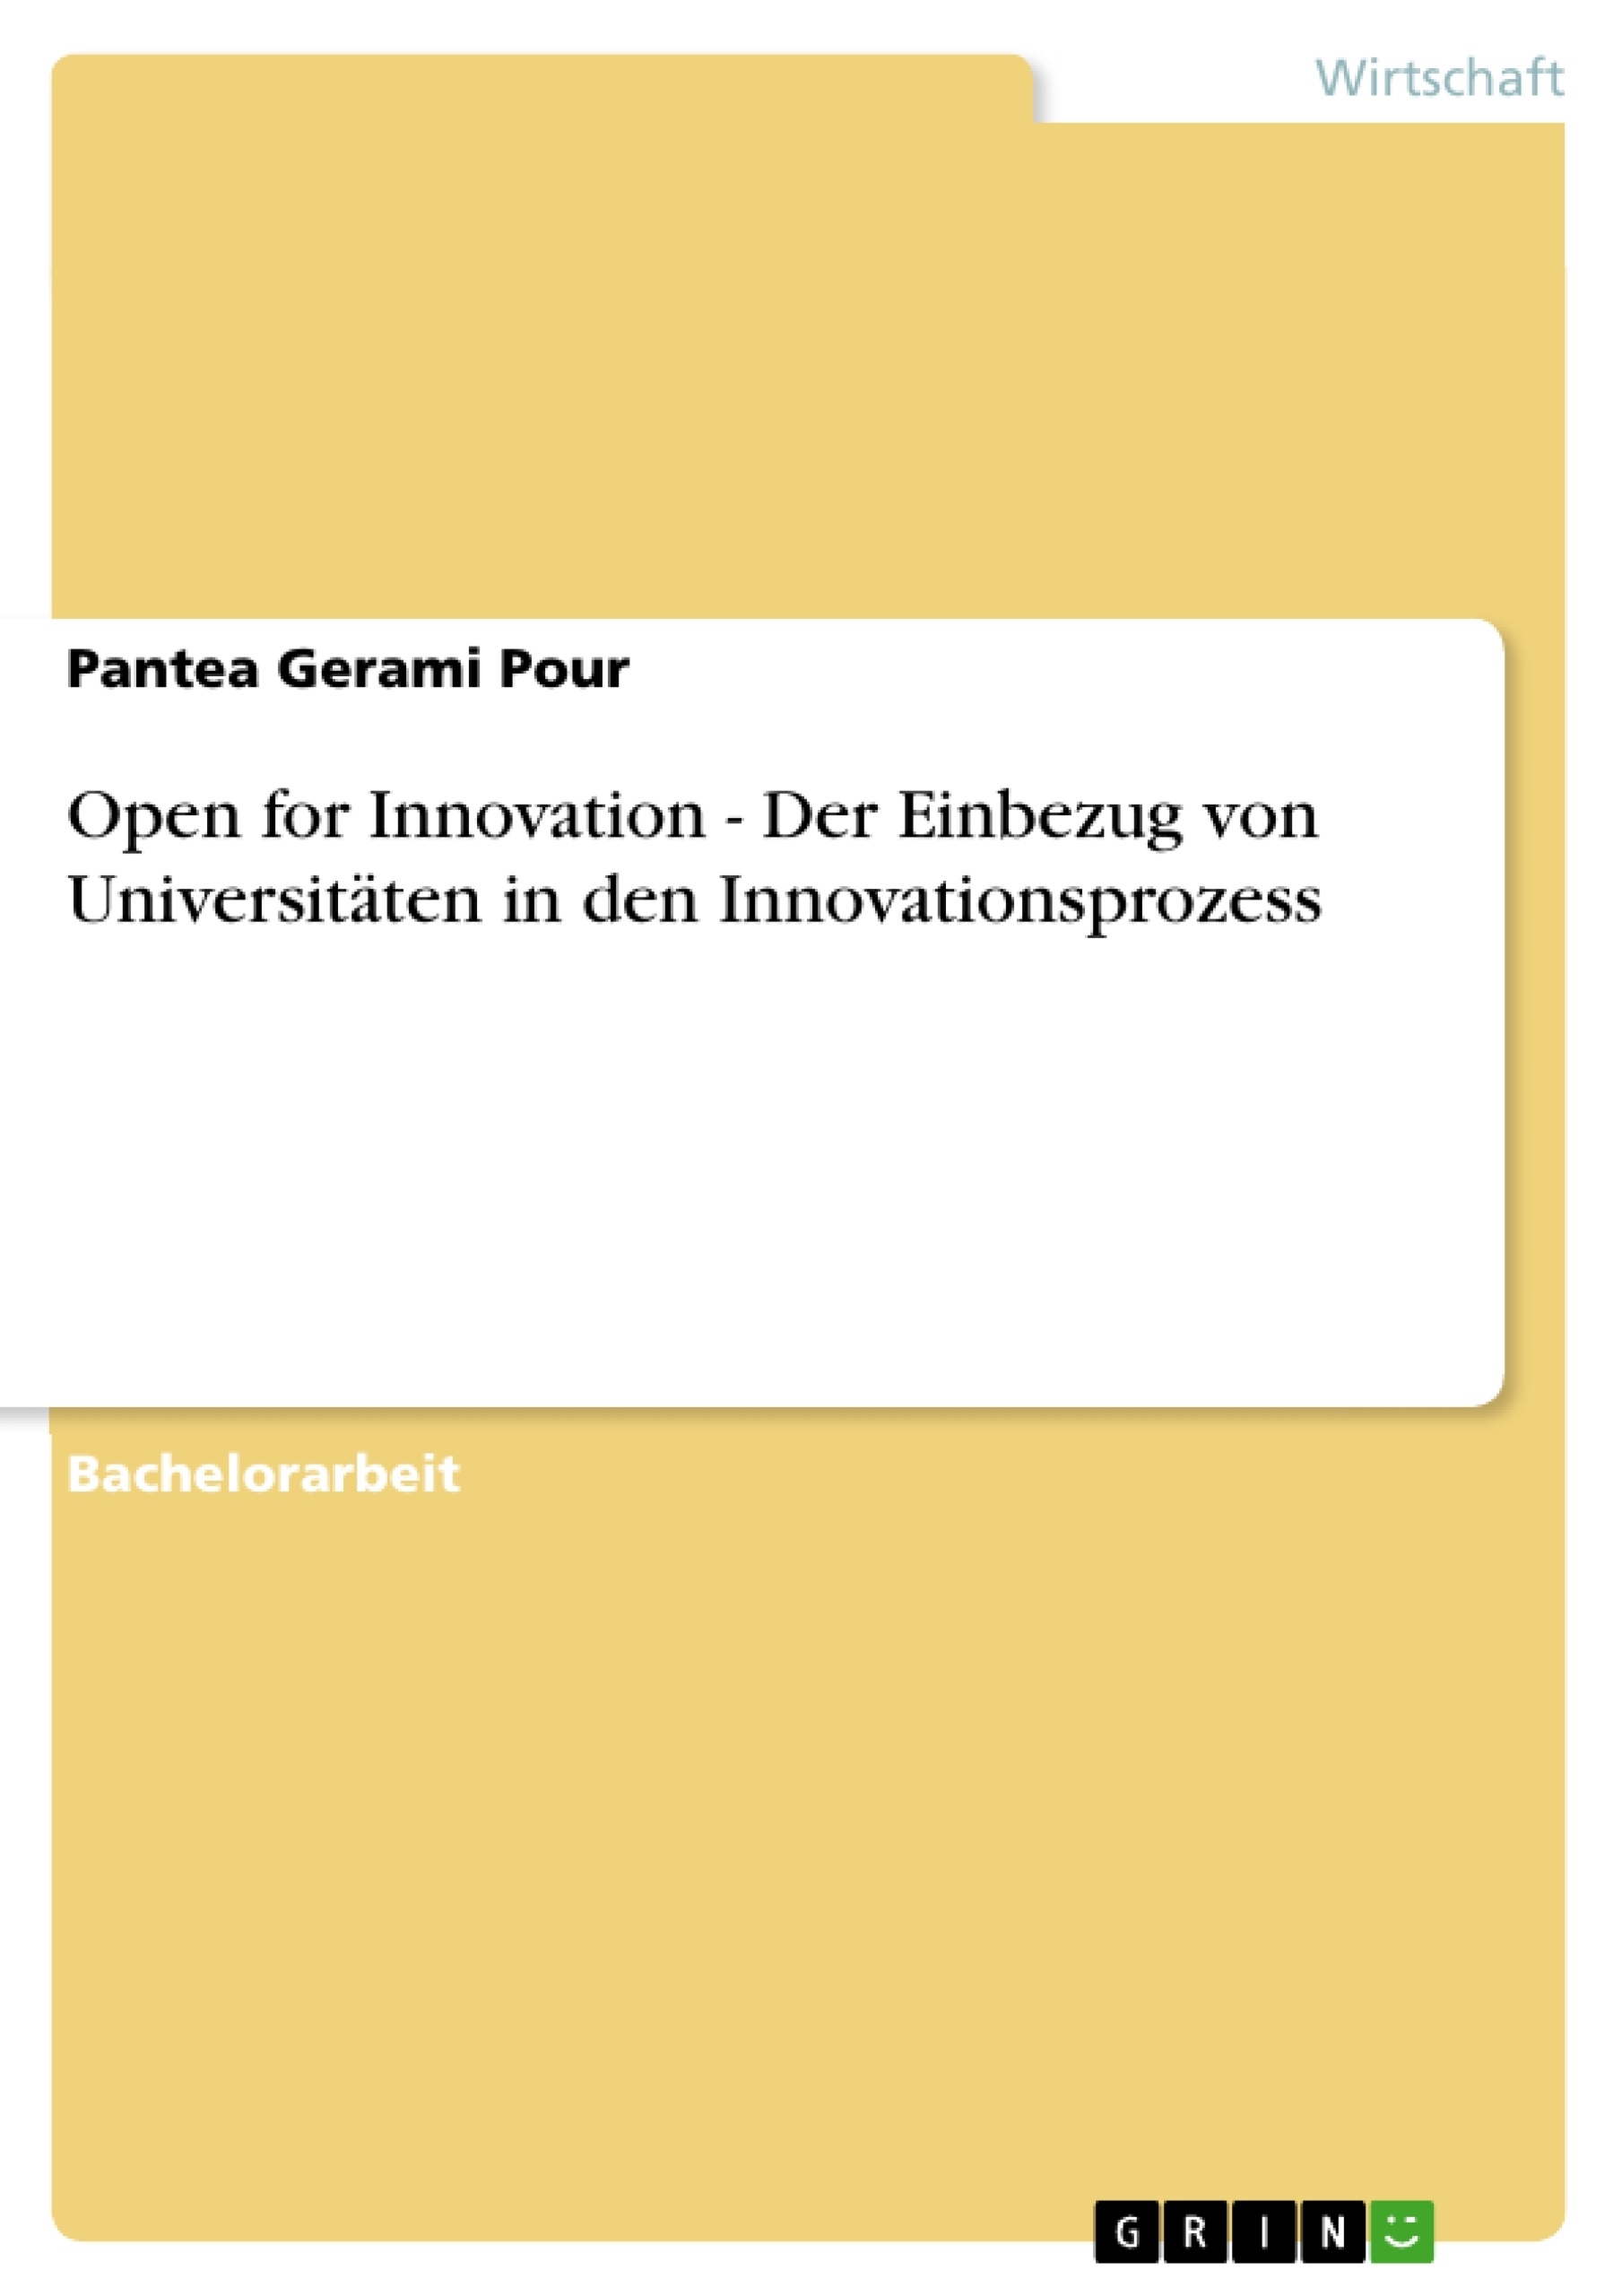 Title: Open for Innovation - Der Einbezug von Universitäten in den Innovationsprozess